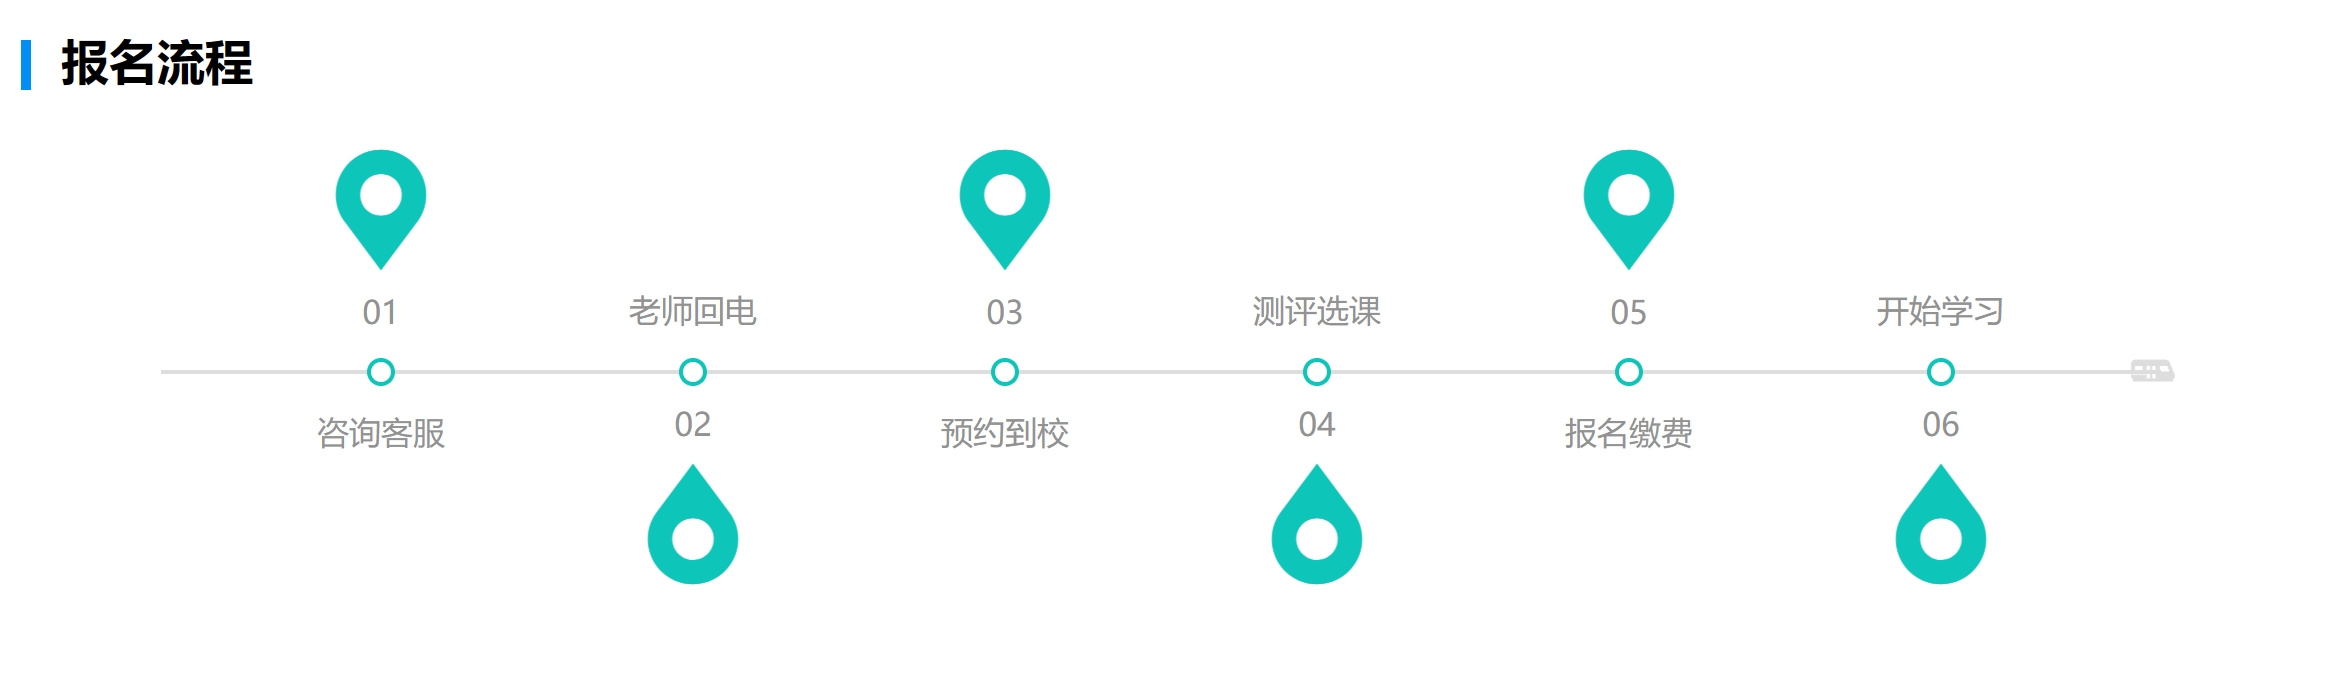 广州朗阁外语培训中心天河校区地址电话多少？